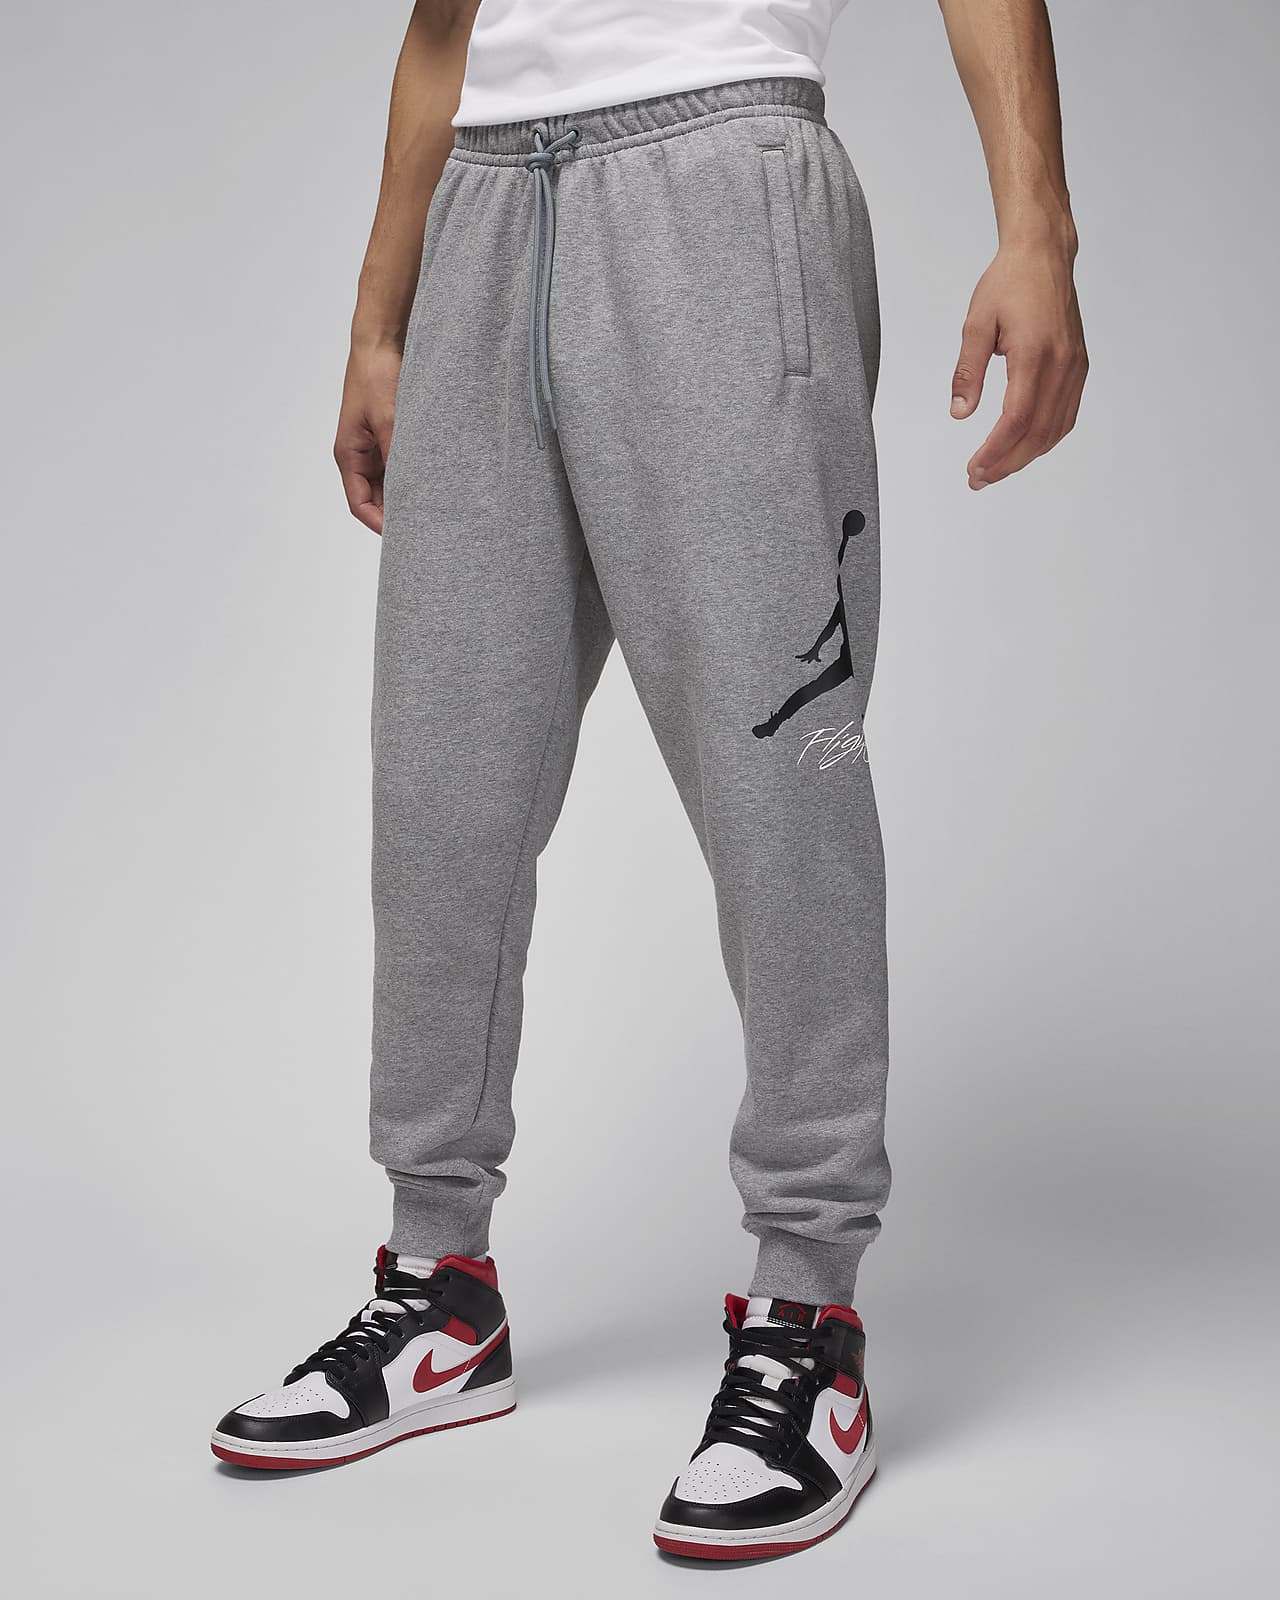 Nike Jordan pants for Men